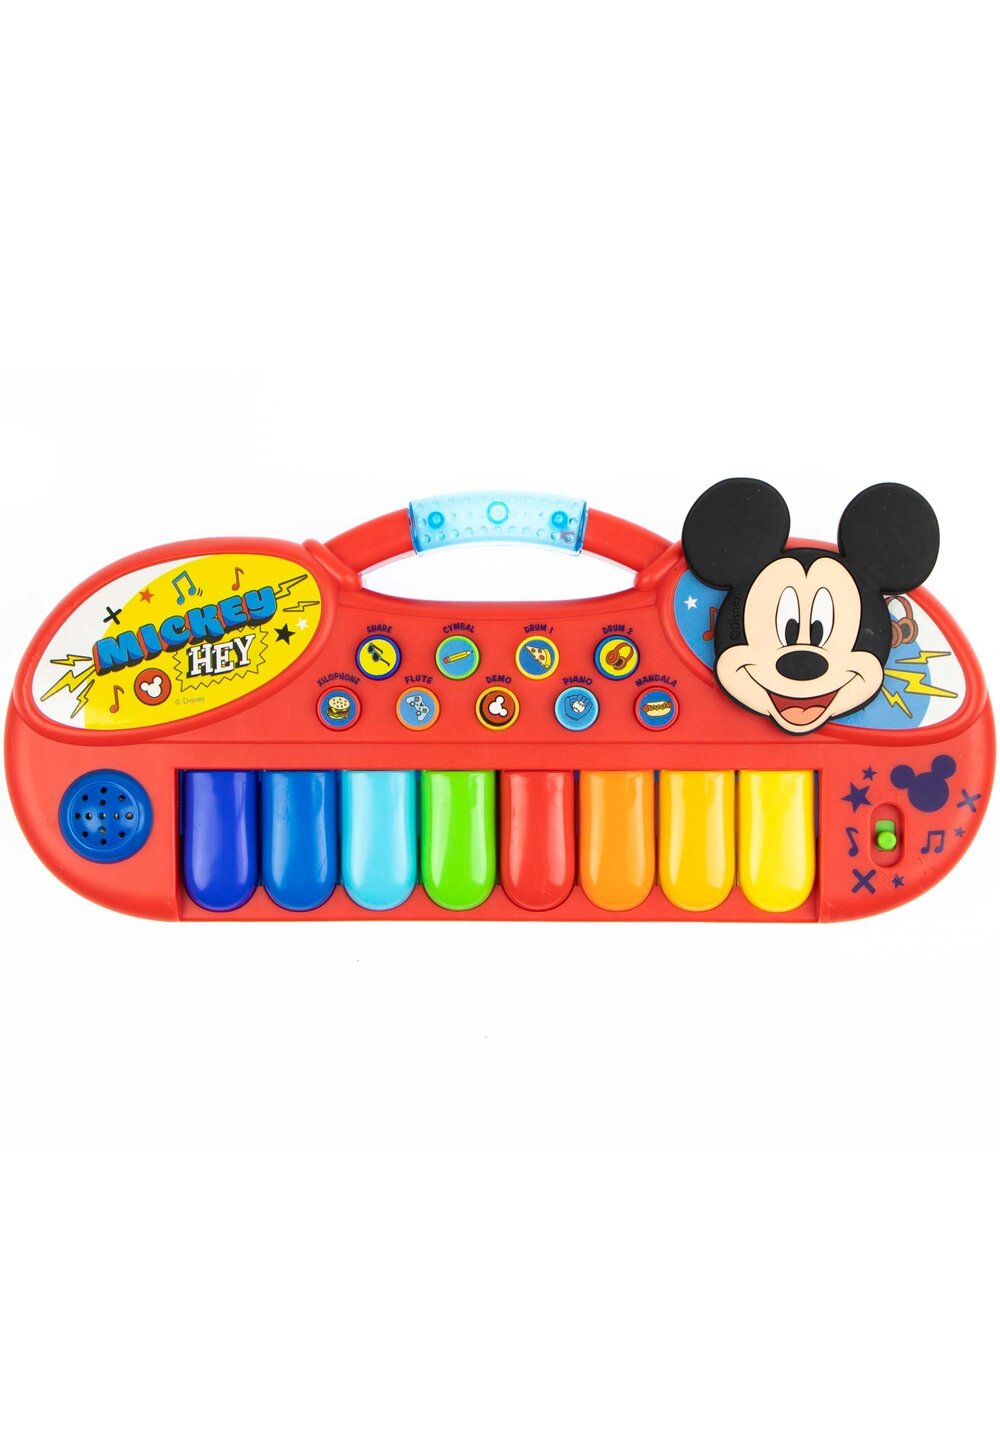 Pian electronic, mickey Mouse, cu 8 taste, rosu Prichindel imagine noua